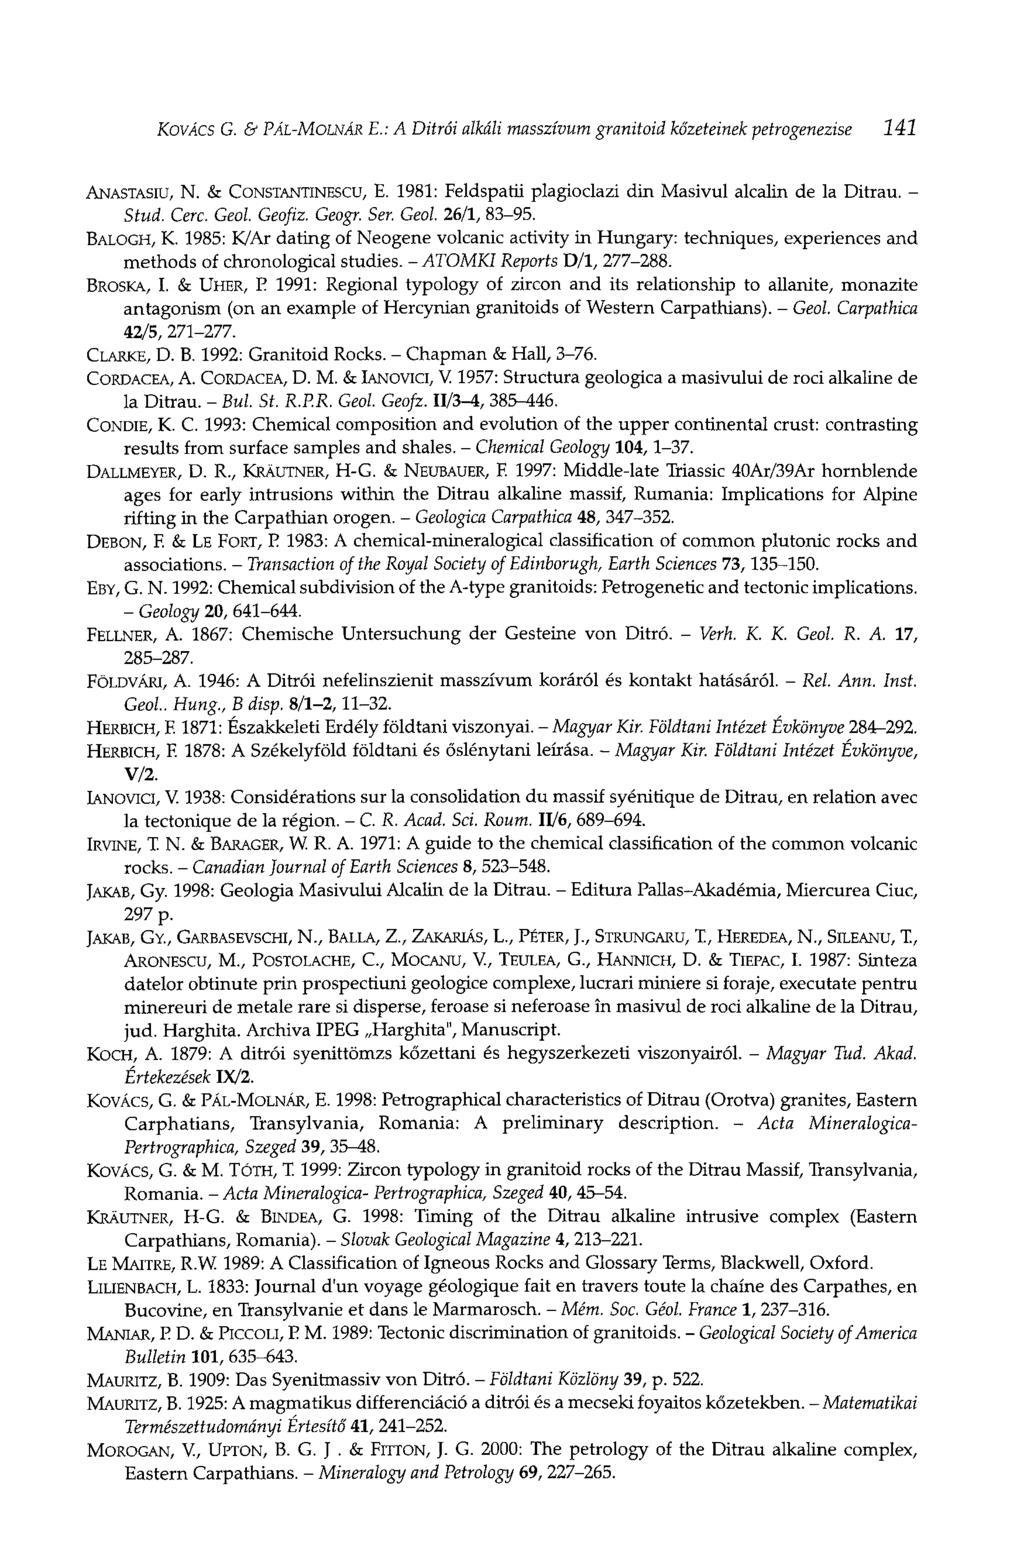 KOVÁCS G. & PÁL-MOLNÁR E.: A Ditrói alkáli masszívum granitoid kőzeteinek petrogenezise 141 ANASTASIU, N. & CONSTANTINESCU, E. 1981: Feldspatü plagioclazi din Masivul alcalin de la Ditrau. - Stud.